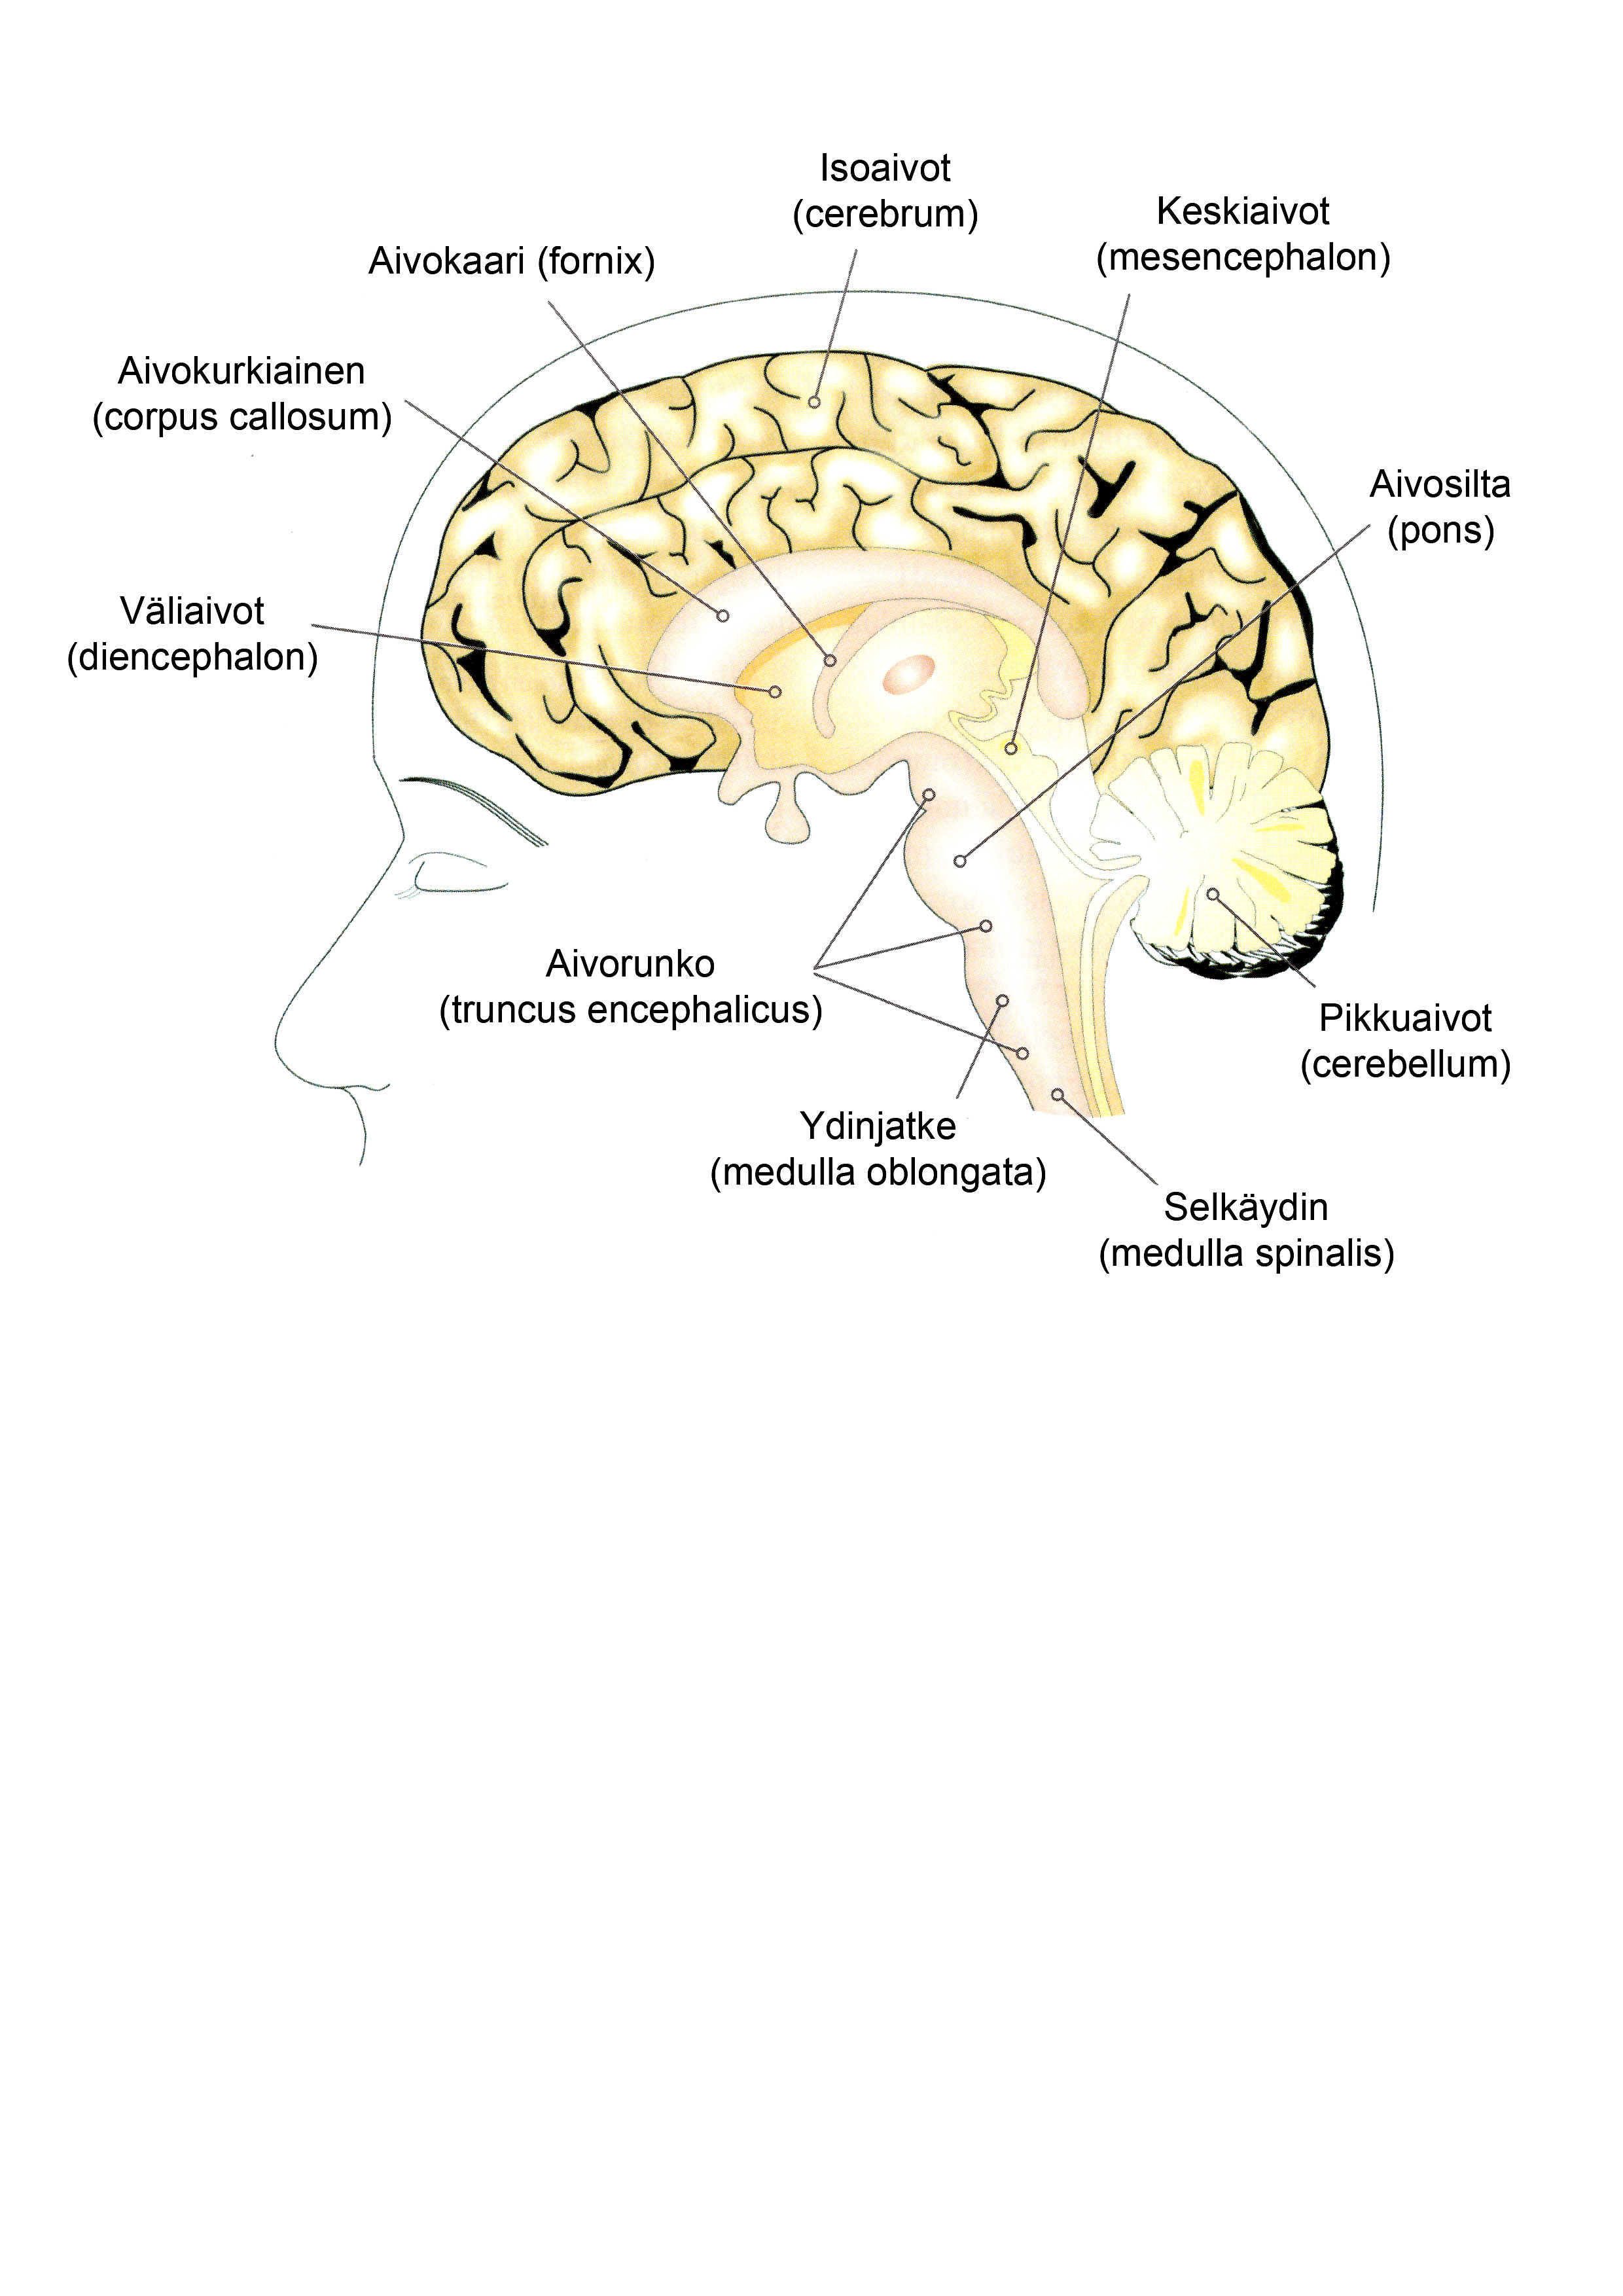 15 Isoaivot ovat aivojen suurin osa. Ne jakautuvat kahteen aivopuoliskoon, joita yhdistää aivokurkiainen.